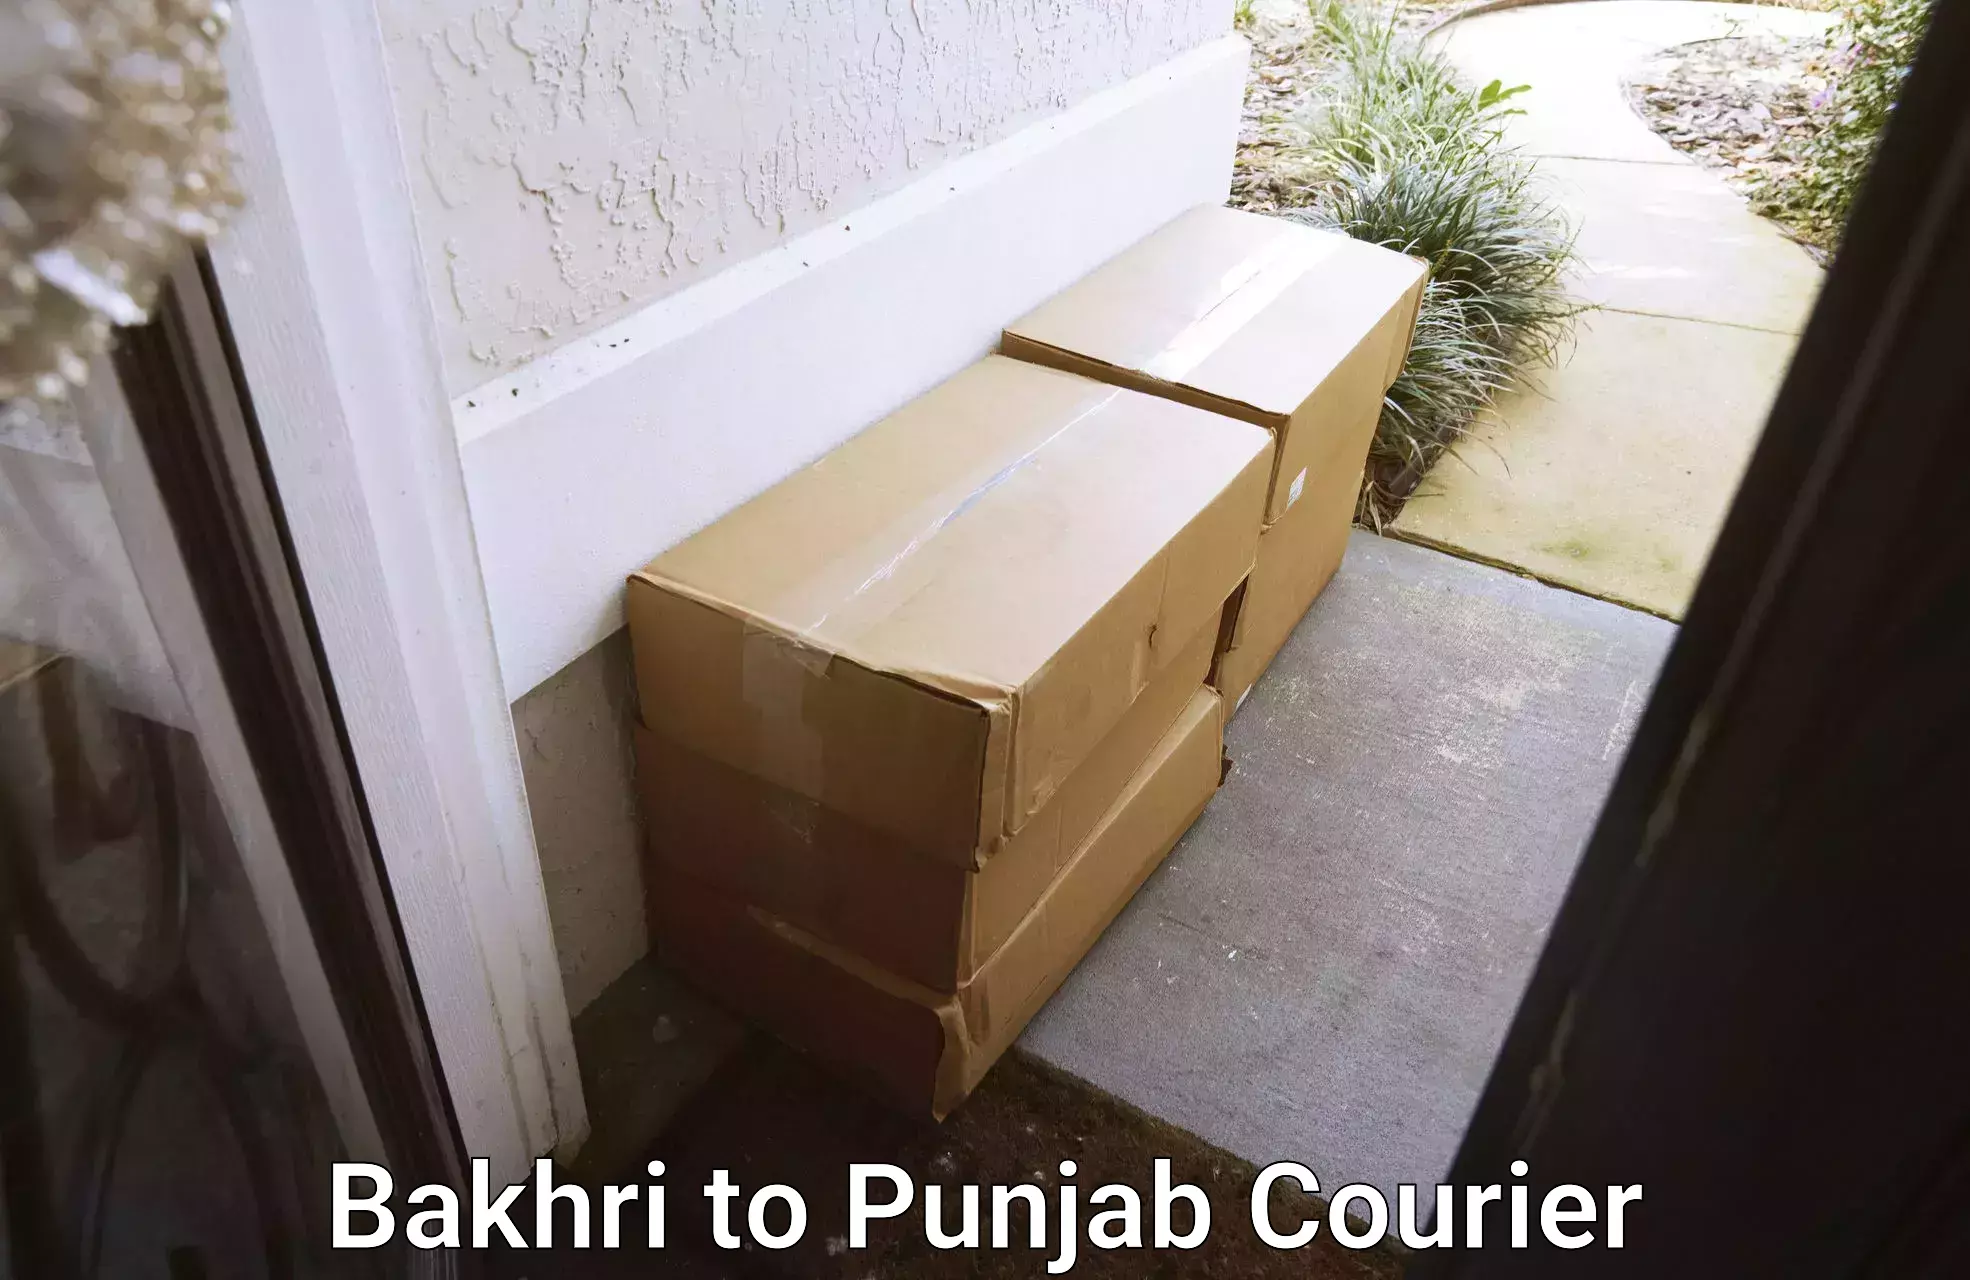 Skilled furniture movers Bakhri to Jalandhar